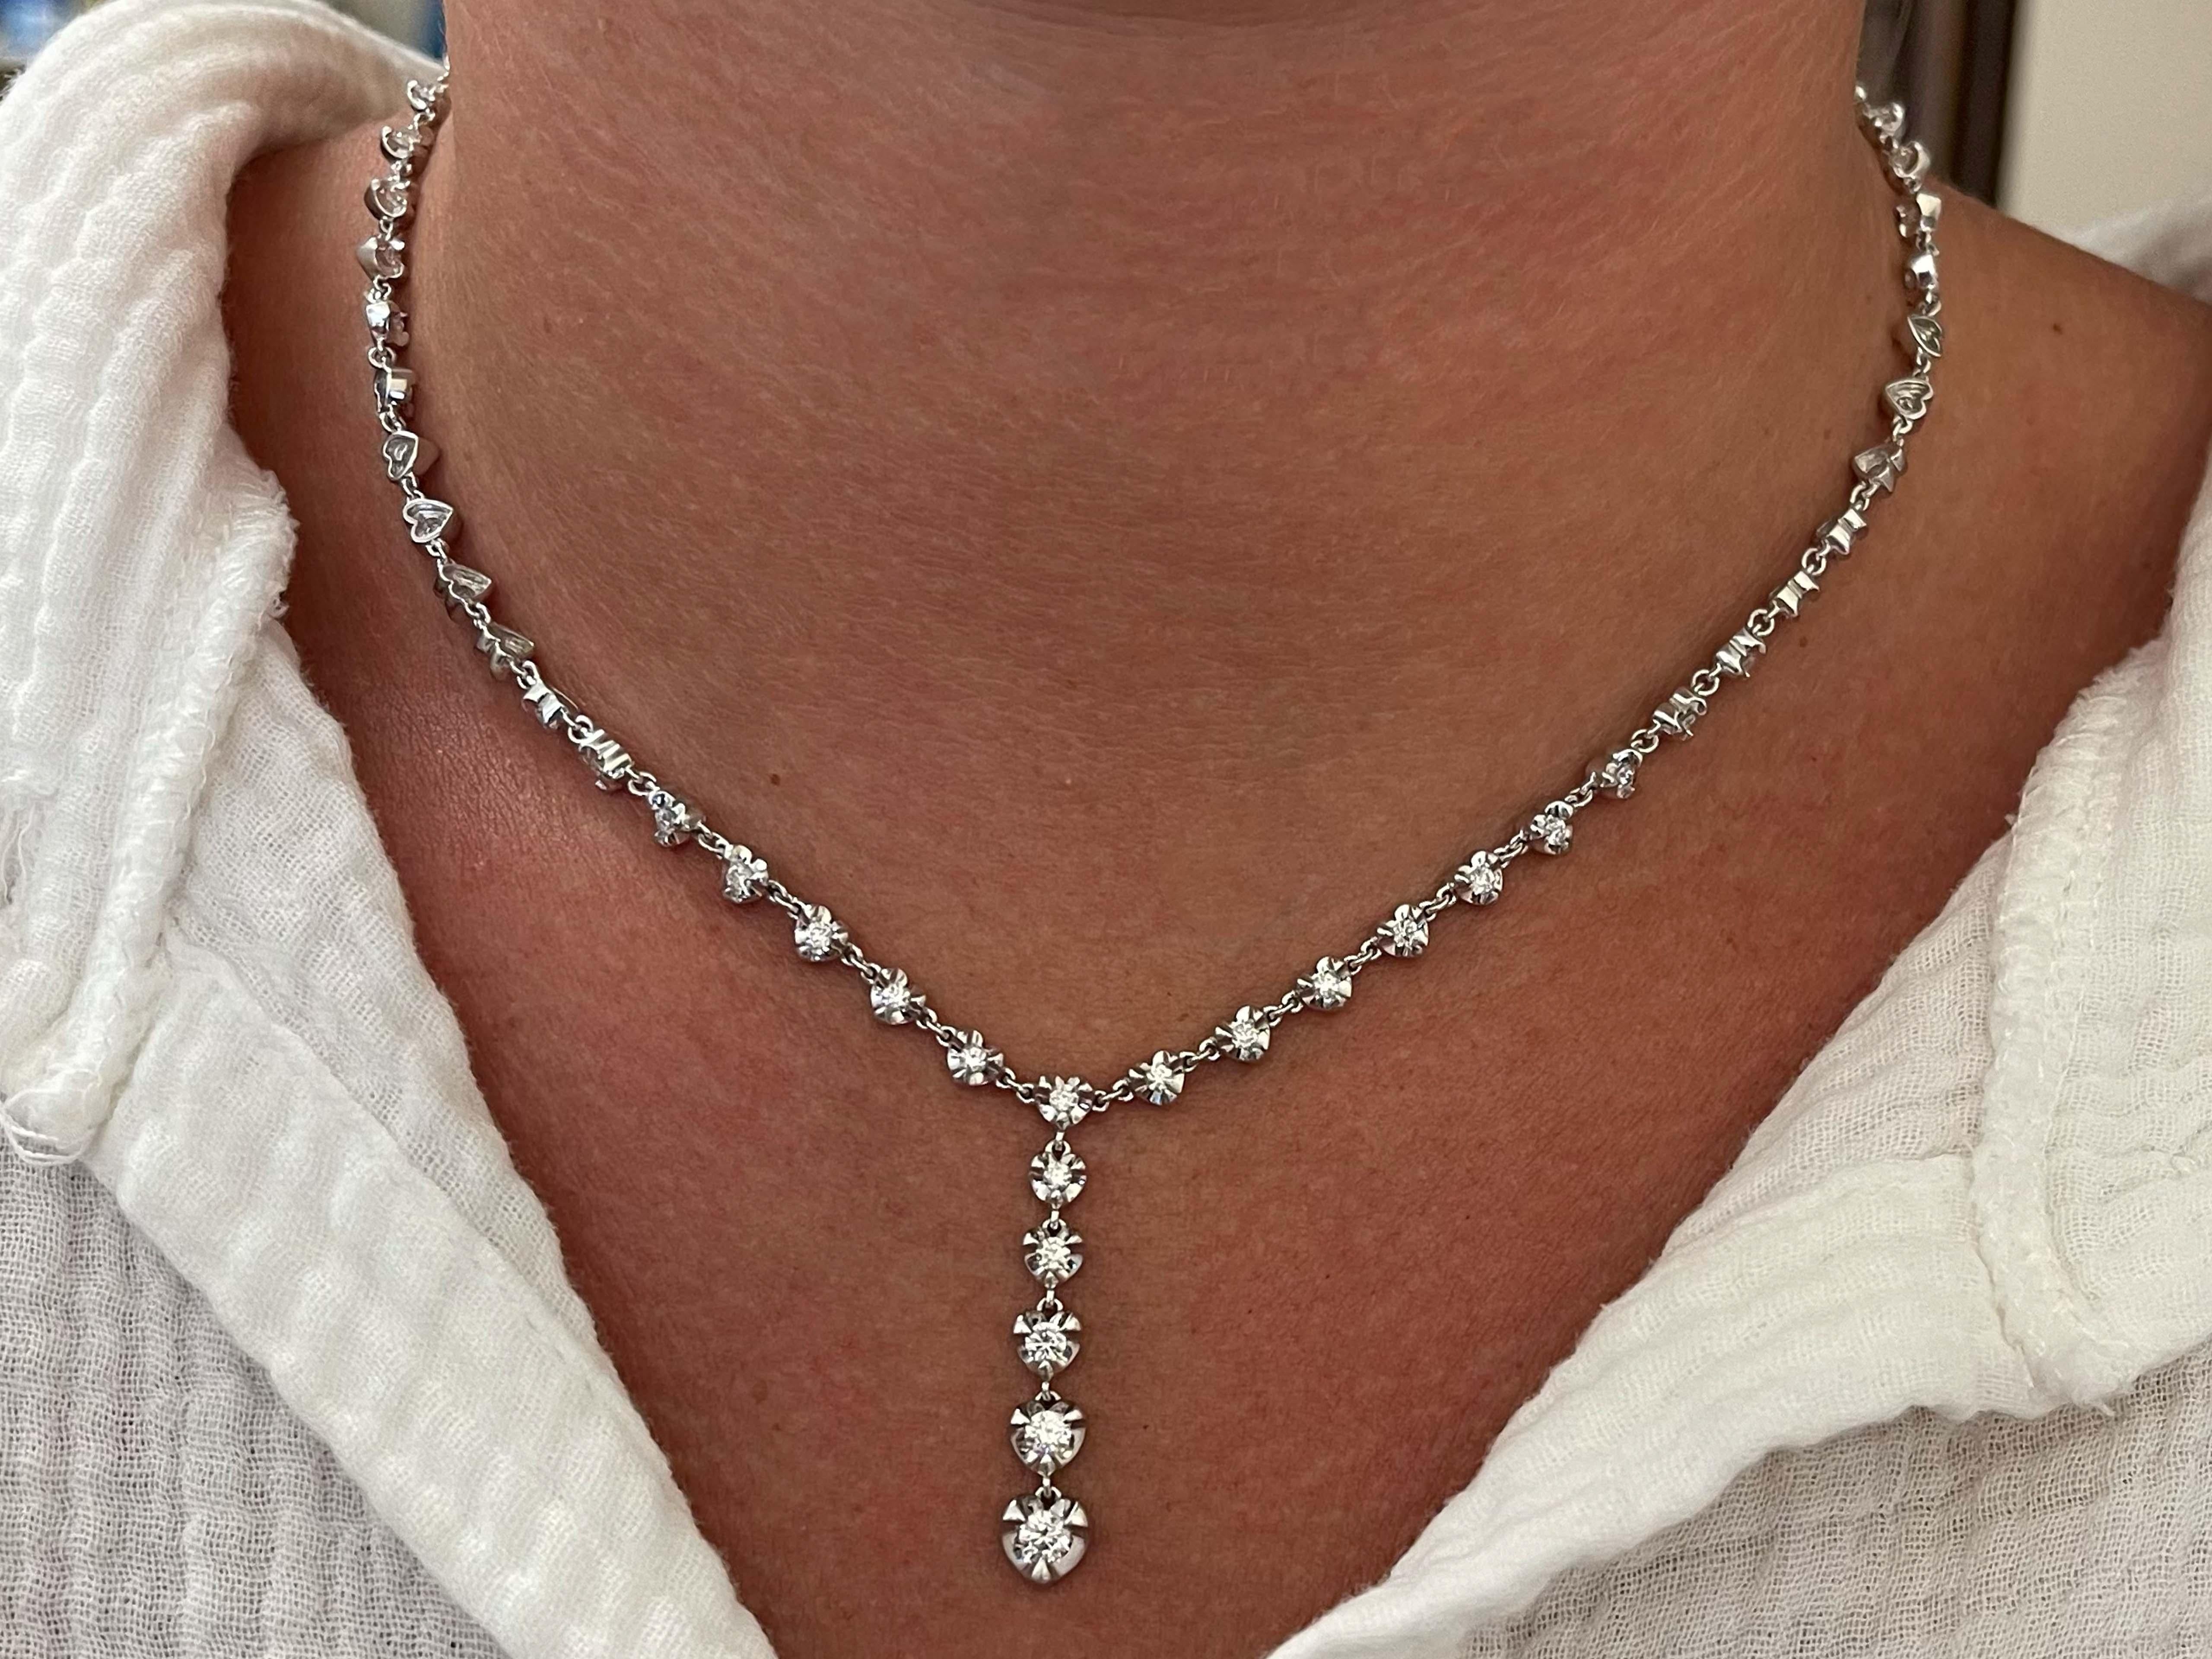 Artikel-Spezifikationen:

Stil: Diamant-Herz-Tropfen-Halskette

Halskette Metall: 14k Weißgold

Gesamtgewicht: 19,2 Gramm

Kettenlänge: 17